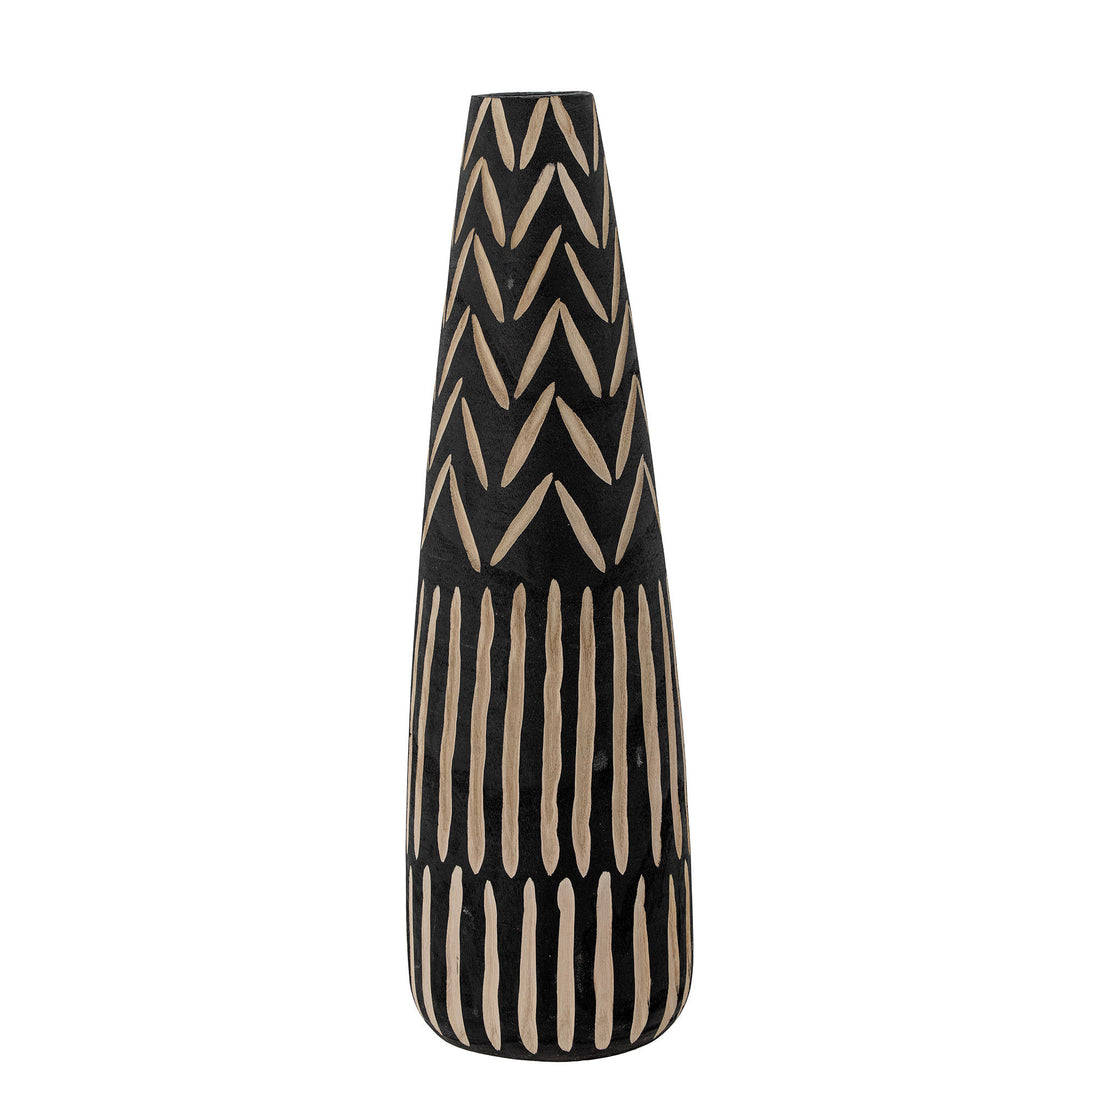 Creative Collection Noami Deko Vase, Black, Emperor wood